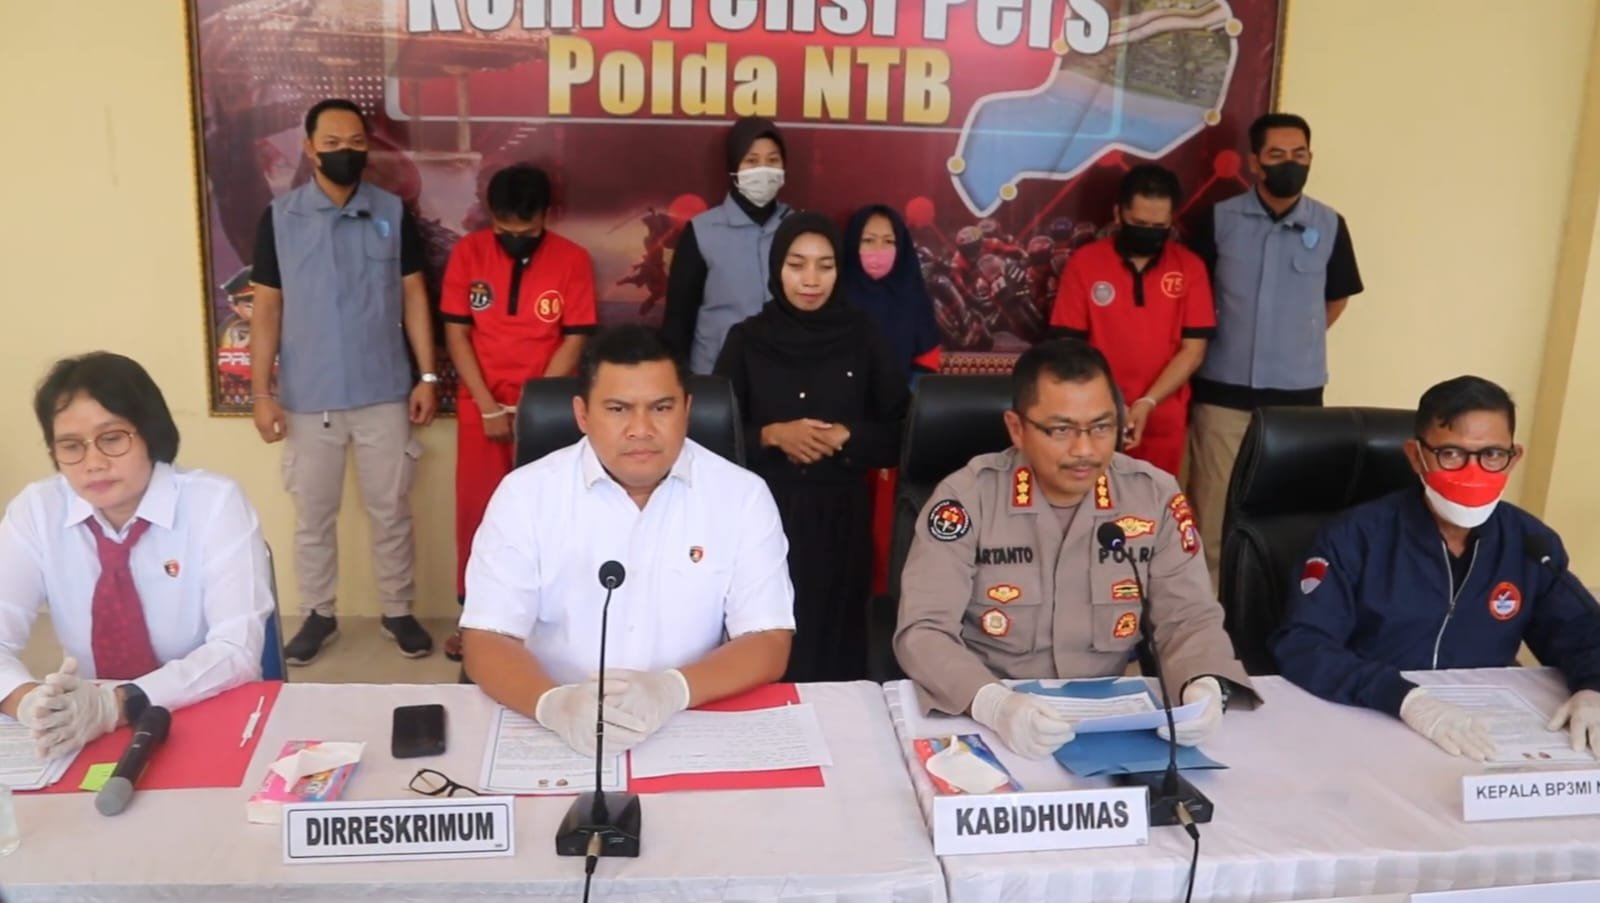 PMI Lombok Disiksa Majikan di Arab Saudi, Komplotan TPPO Ditnagkap